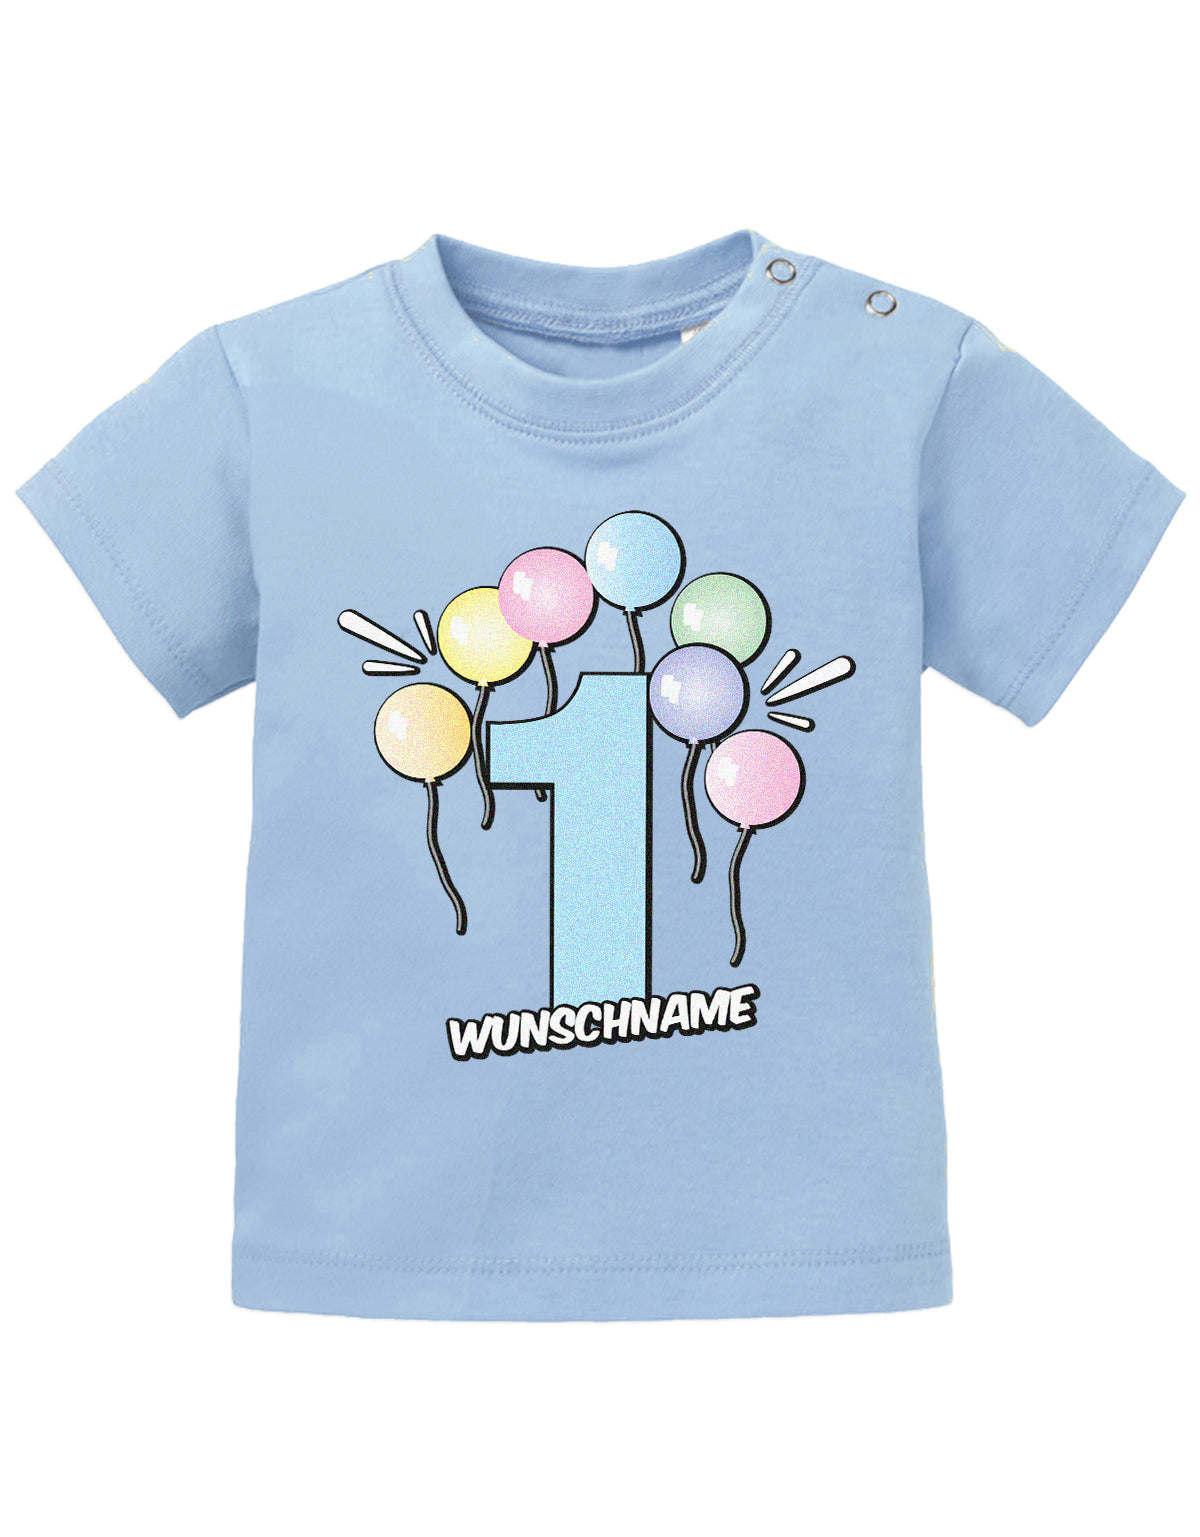 Baby T-Shirt erster Geburtstag mit Ballons und Wunschnamen-hellblau